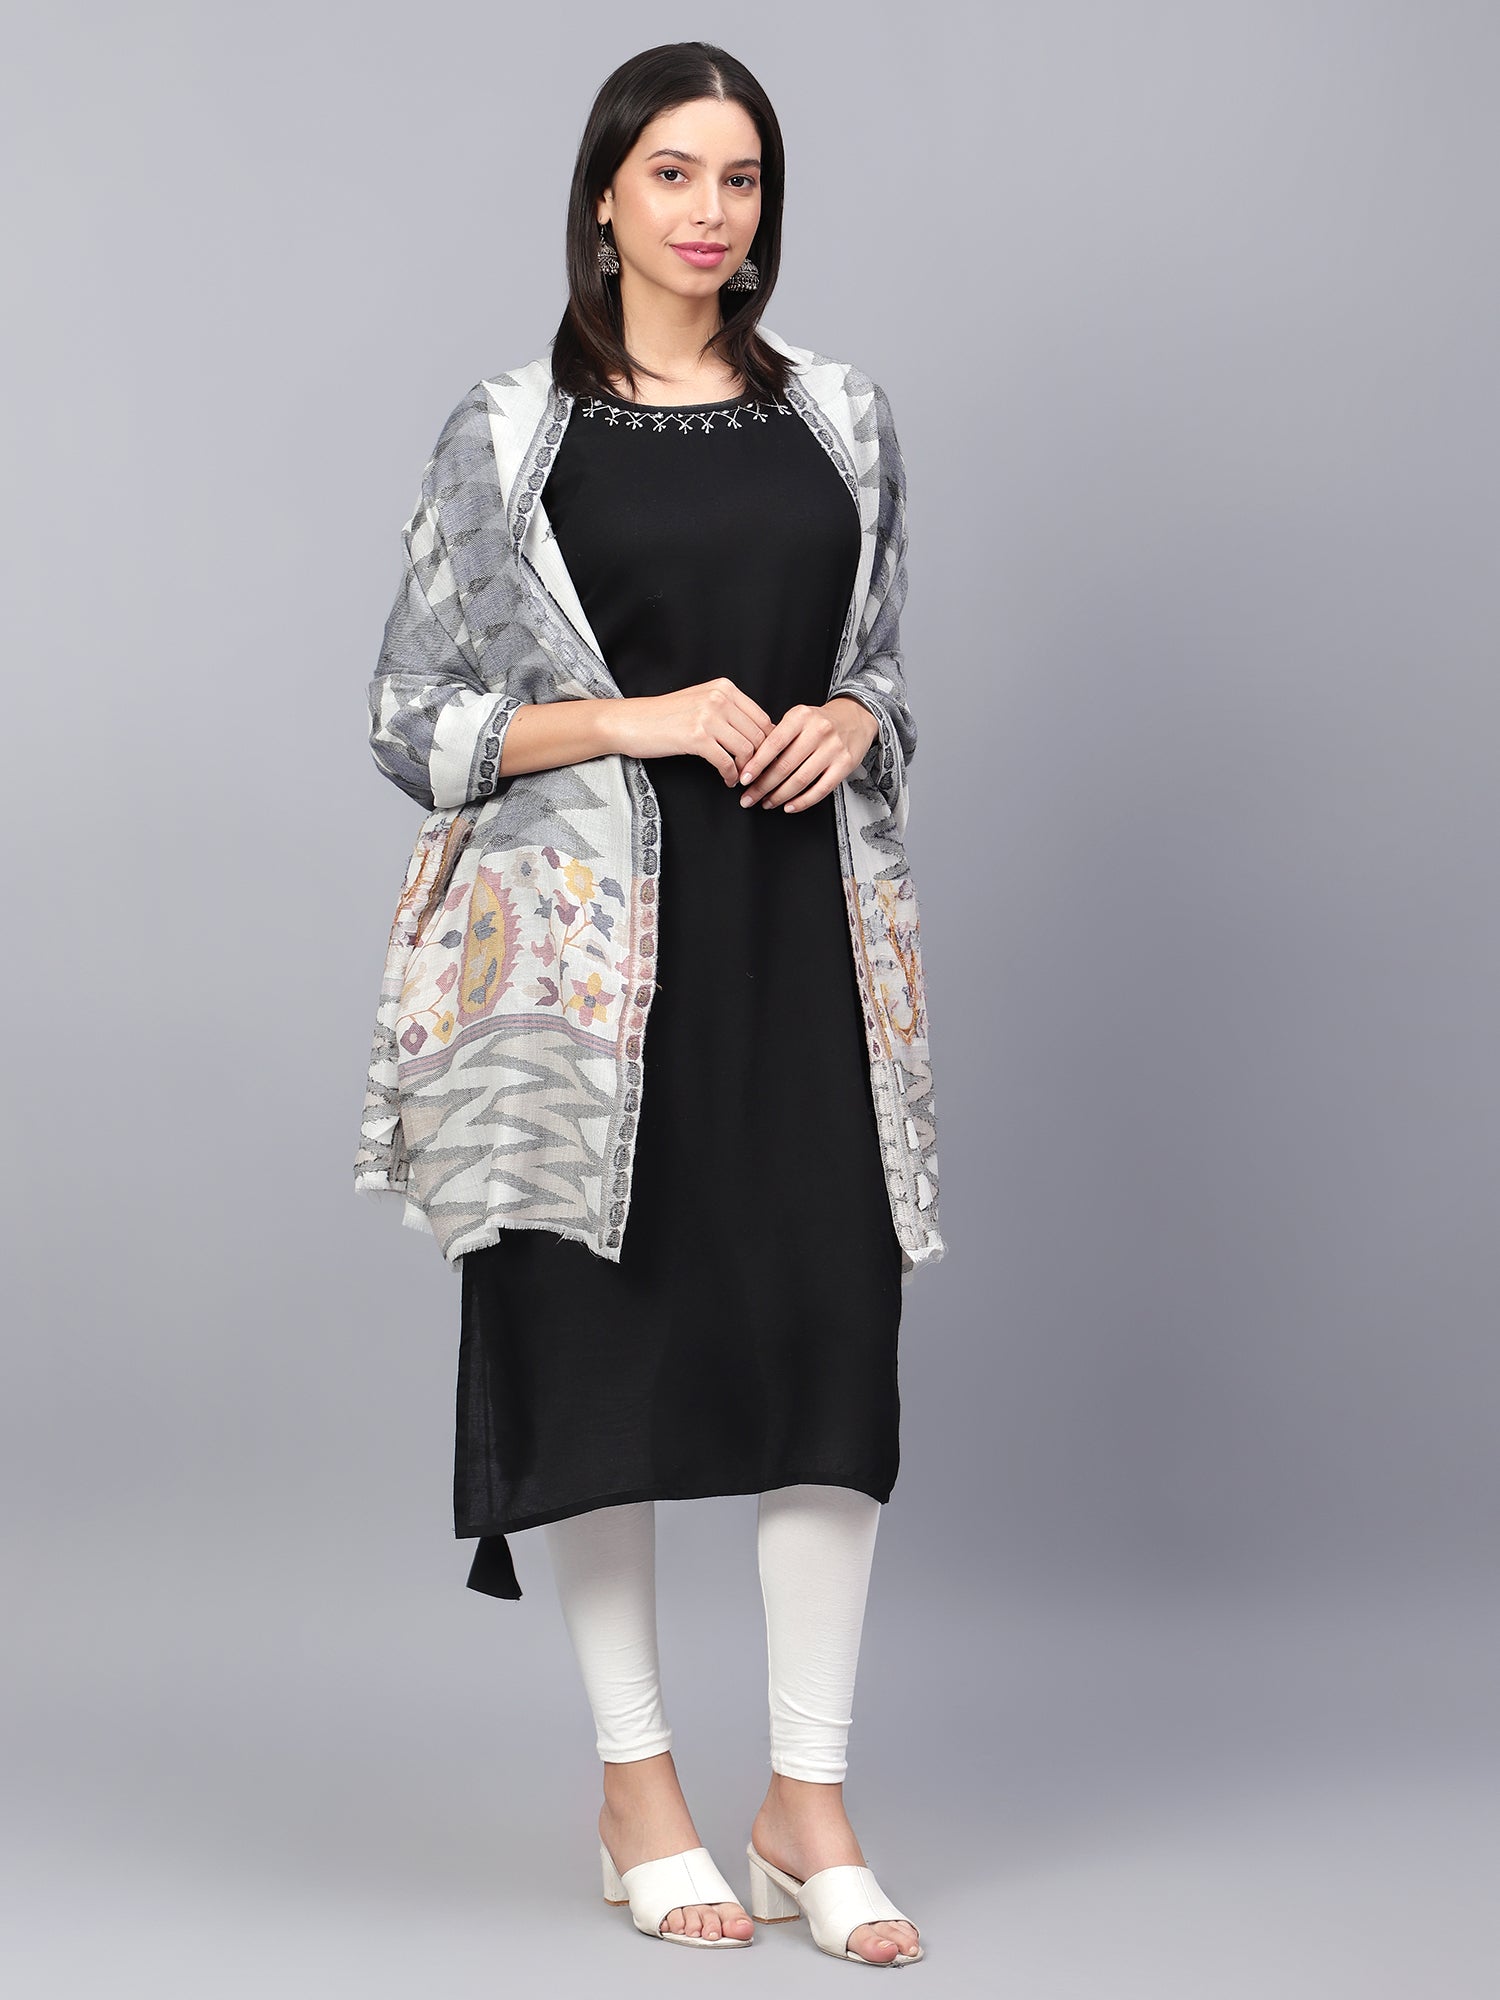 kani shawl price in kashmir, kani pashmina stole